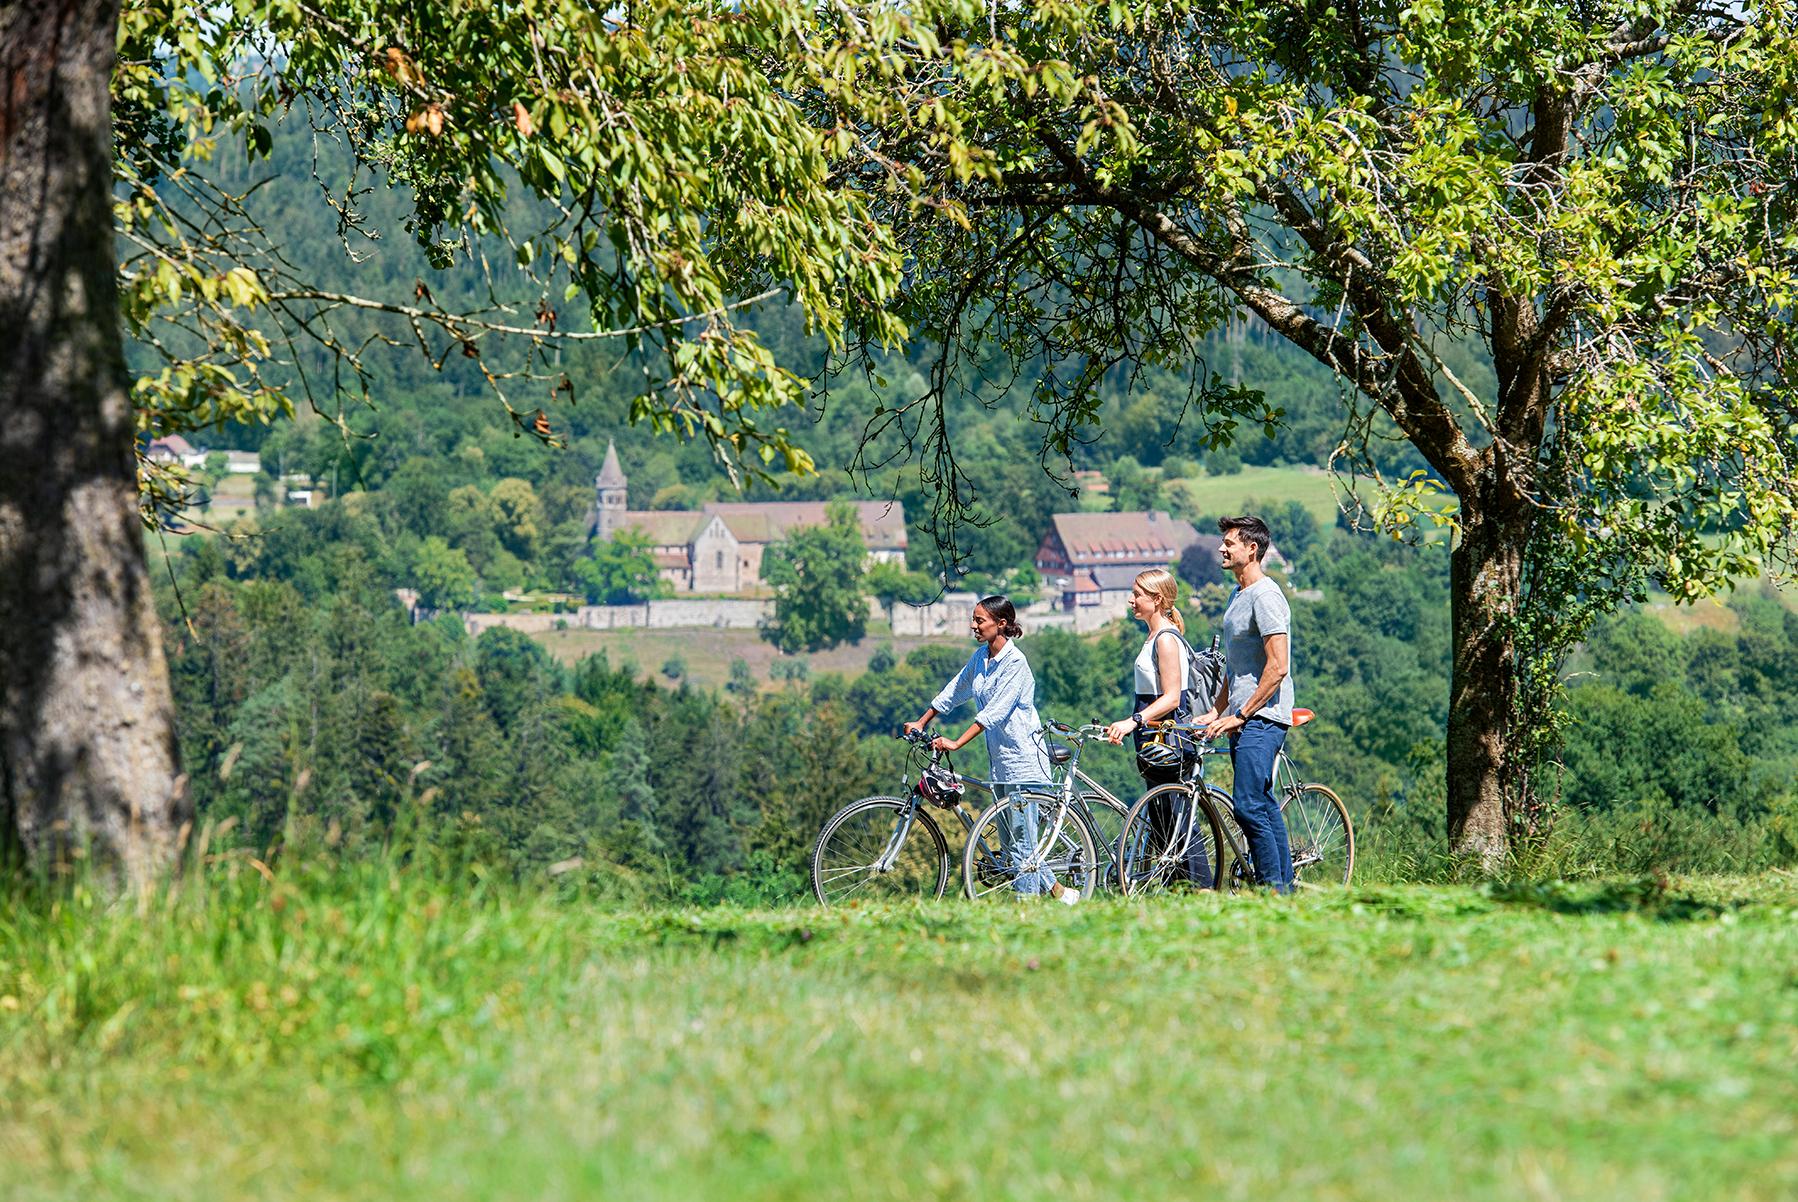 Kloster Lorch, Radfahrer mit Kloster Lorch im Hintergrund